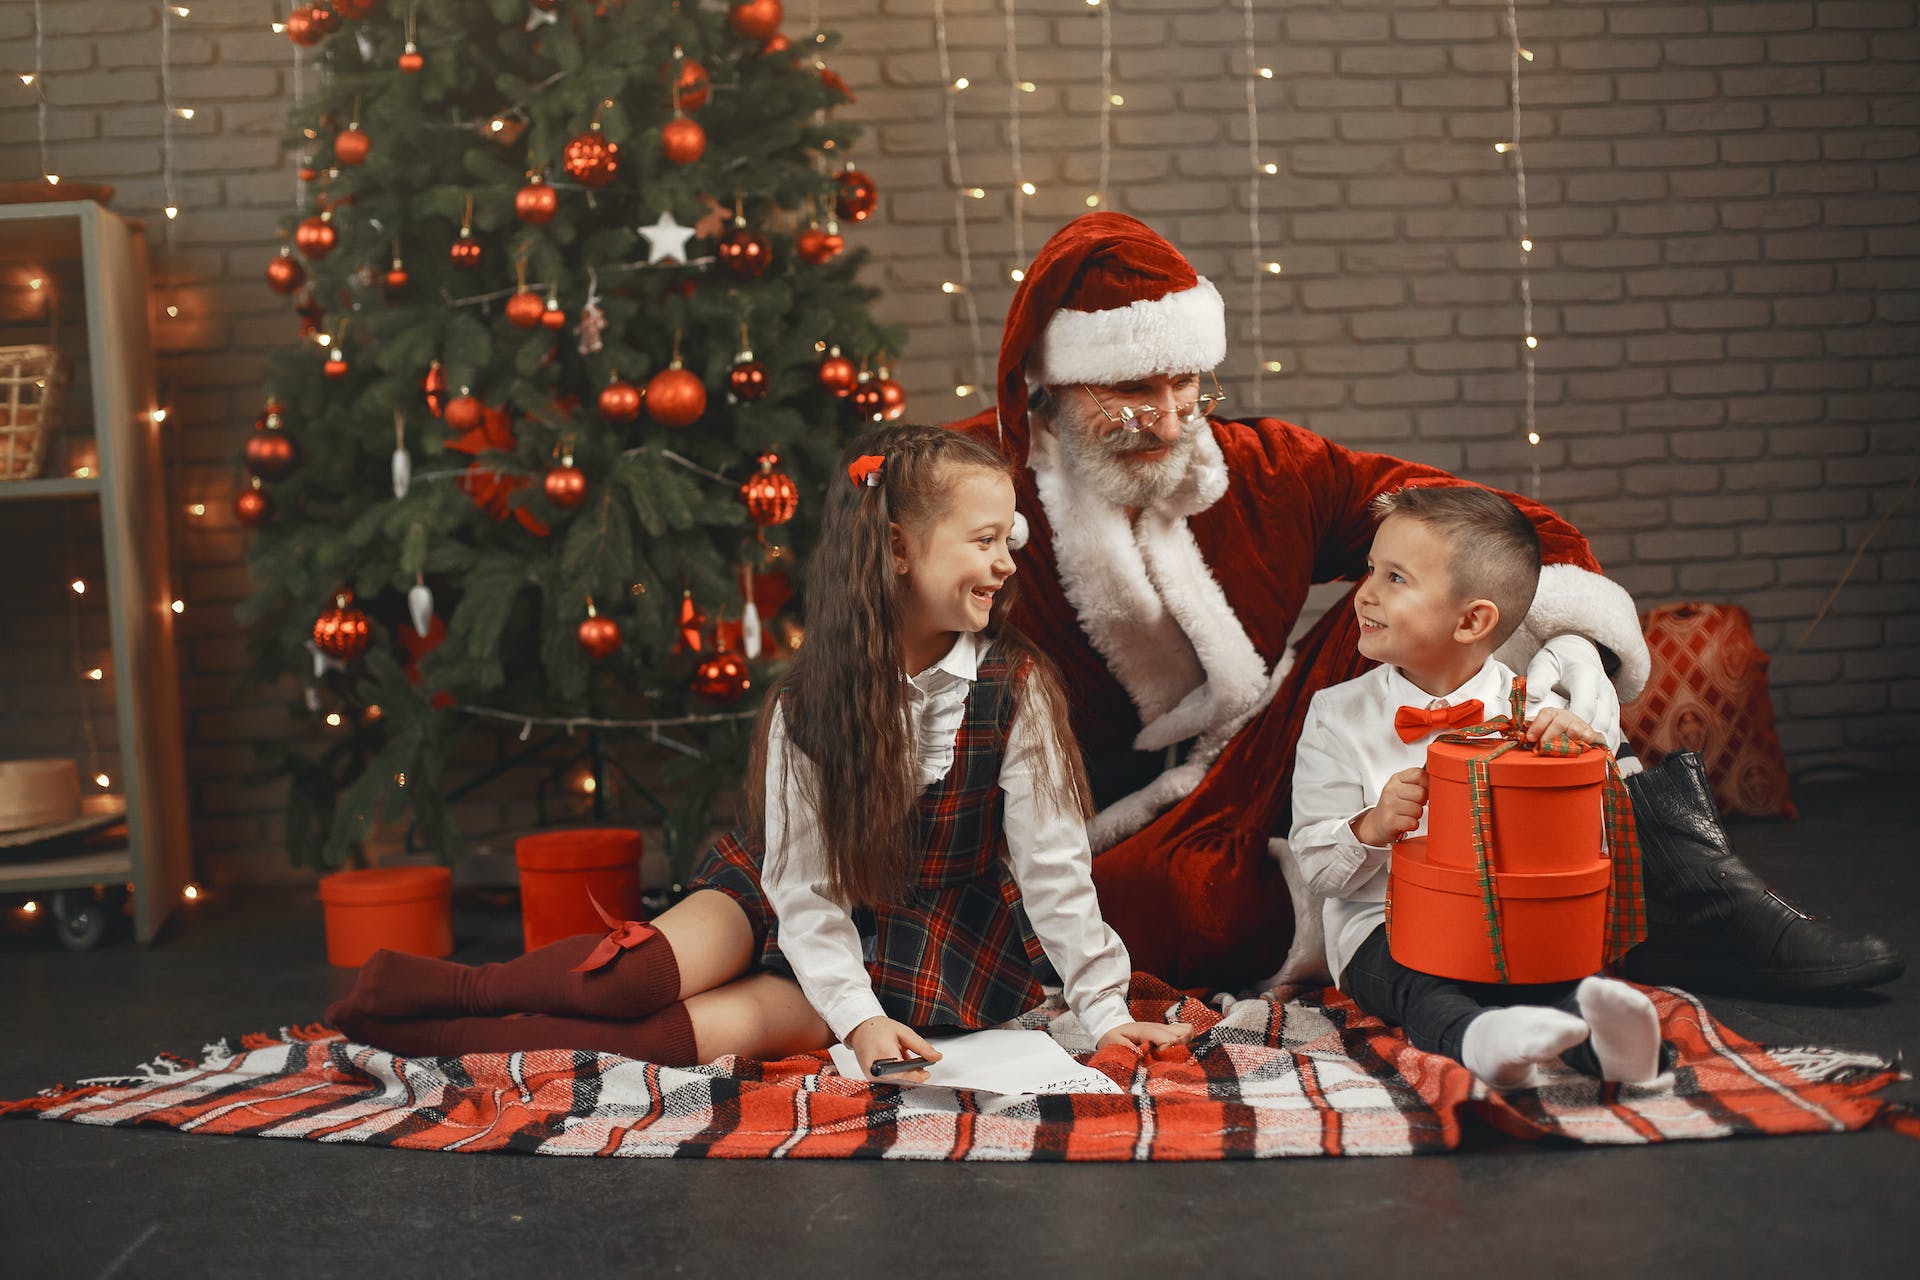 Homme en costume de Père Noël assis avec un garçon et une fille à côté d'un sapin de Noël | Source : Pexels